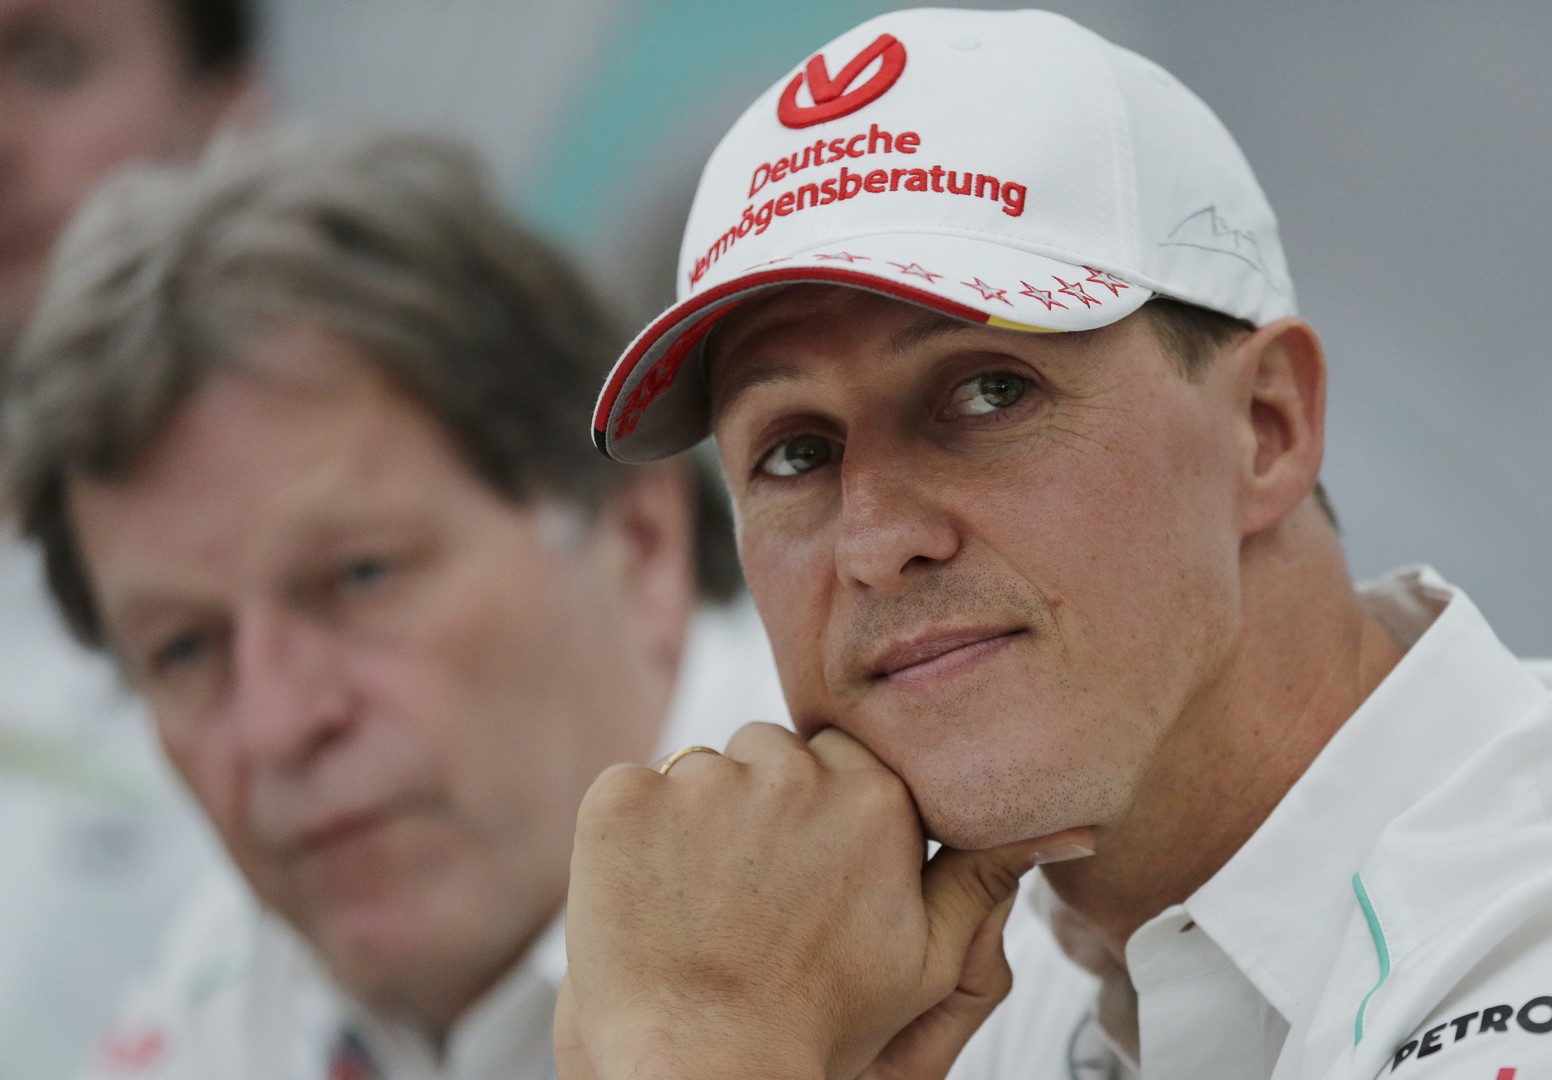 A hétszeres F1-es világbajnok, Michael Schumacher 2013-ban súlyos fejsérülést szenvedett síelés közben. A külföldi média szerint végrendeletében több száz millió dollárt hagy a családjára. →